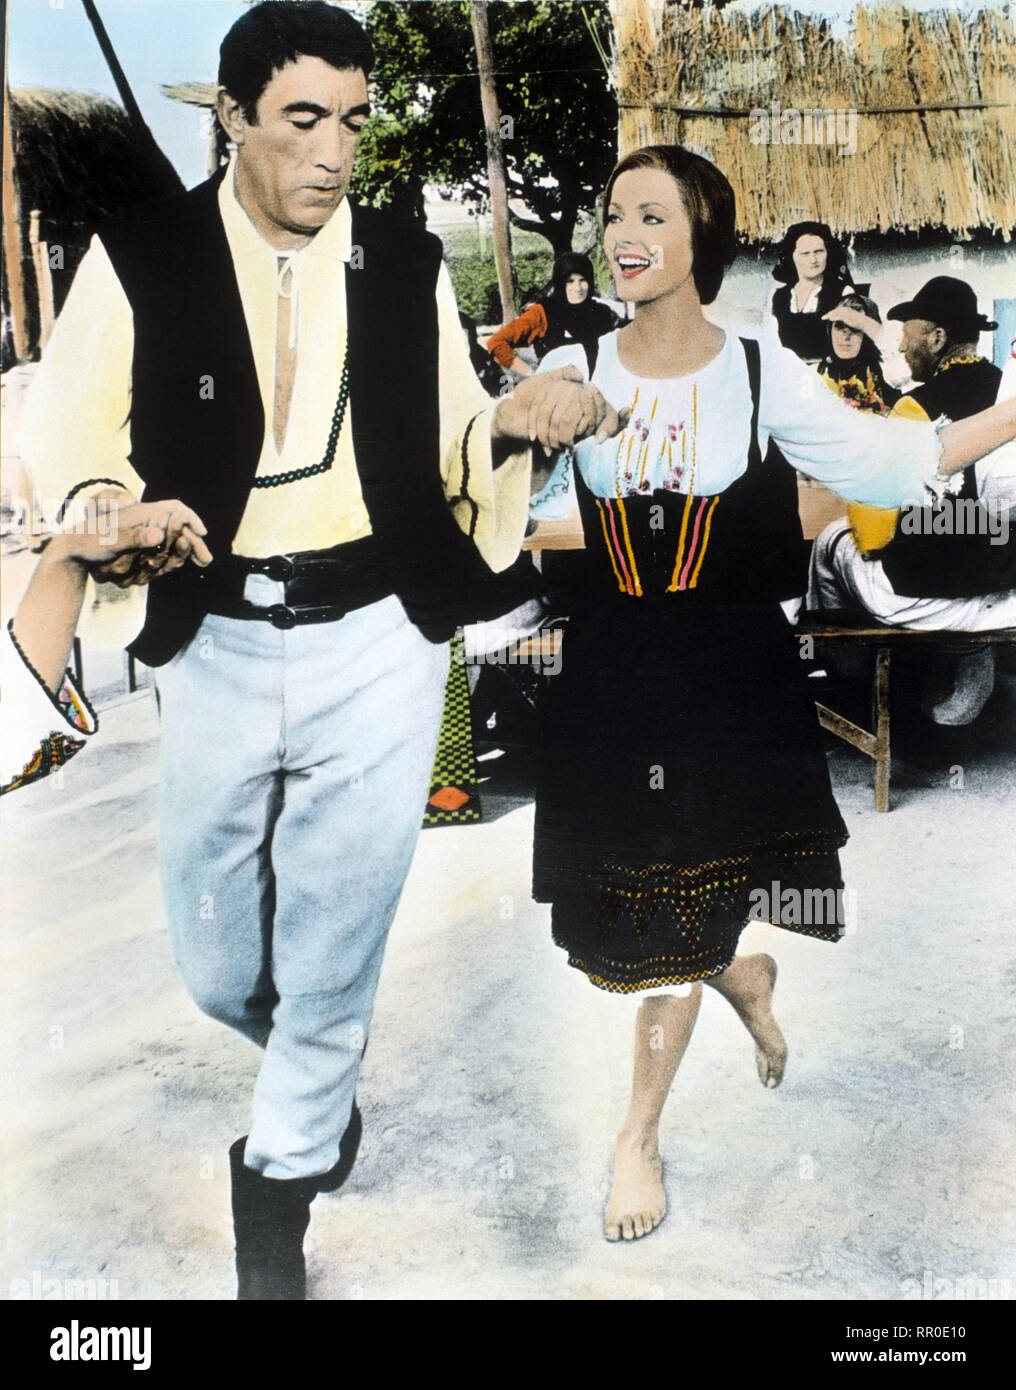 DIE 25. STUNDE / La 25ime heure / F 1966 / Henri Verneuil / Der Bauer Johann Moritz (ANTHONY QUINN) und seine Frau Susanna (VIRNA LISI). / Überschrift: DIE 25. STUNDE / F 1966 Stock Photo